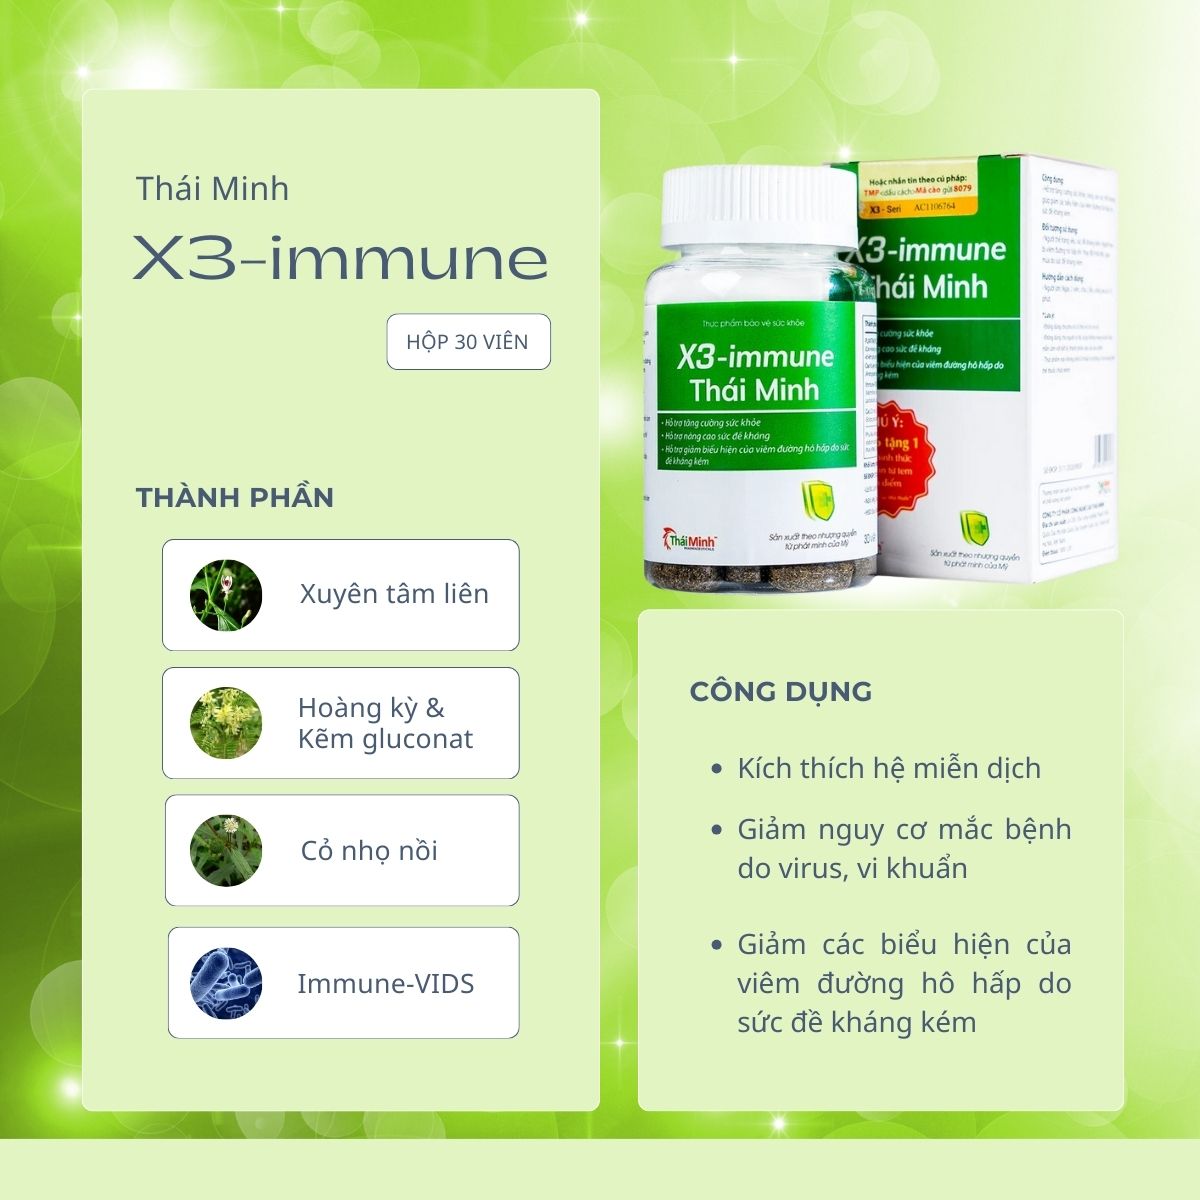 X3-Immune